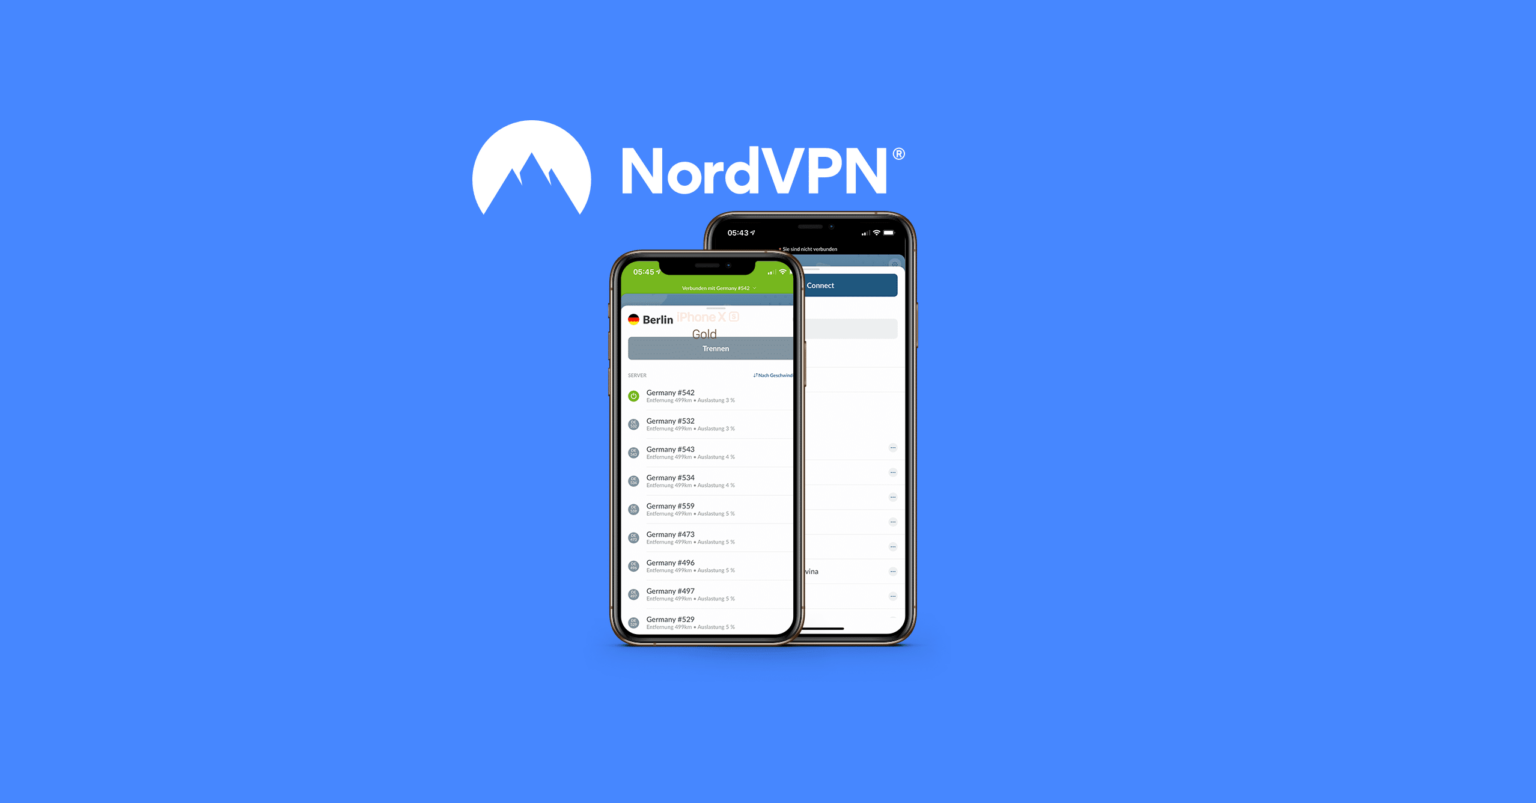 NordVPN iOS App Deutsch 2 • techboys.de • smarte News, auf den Punkt!